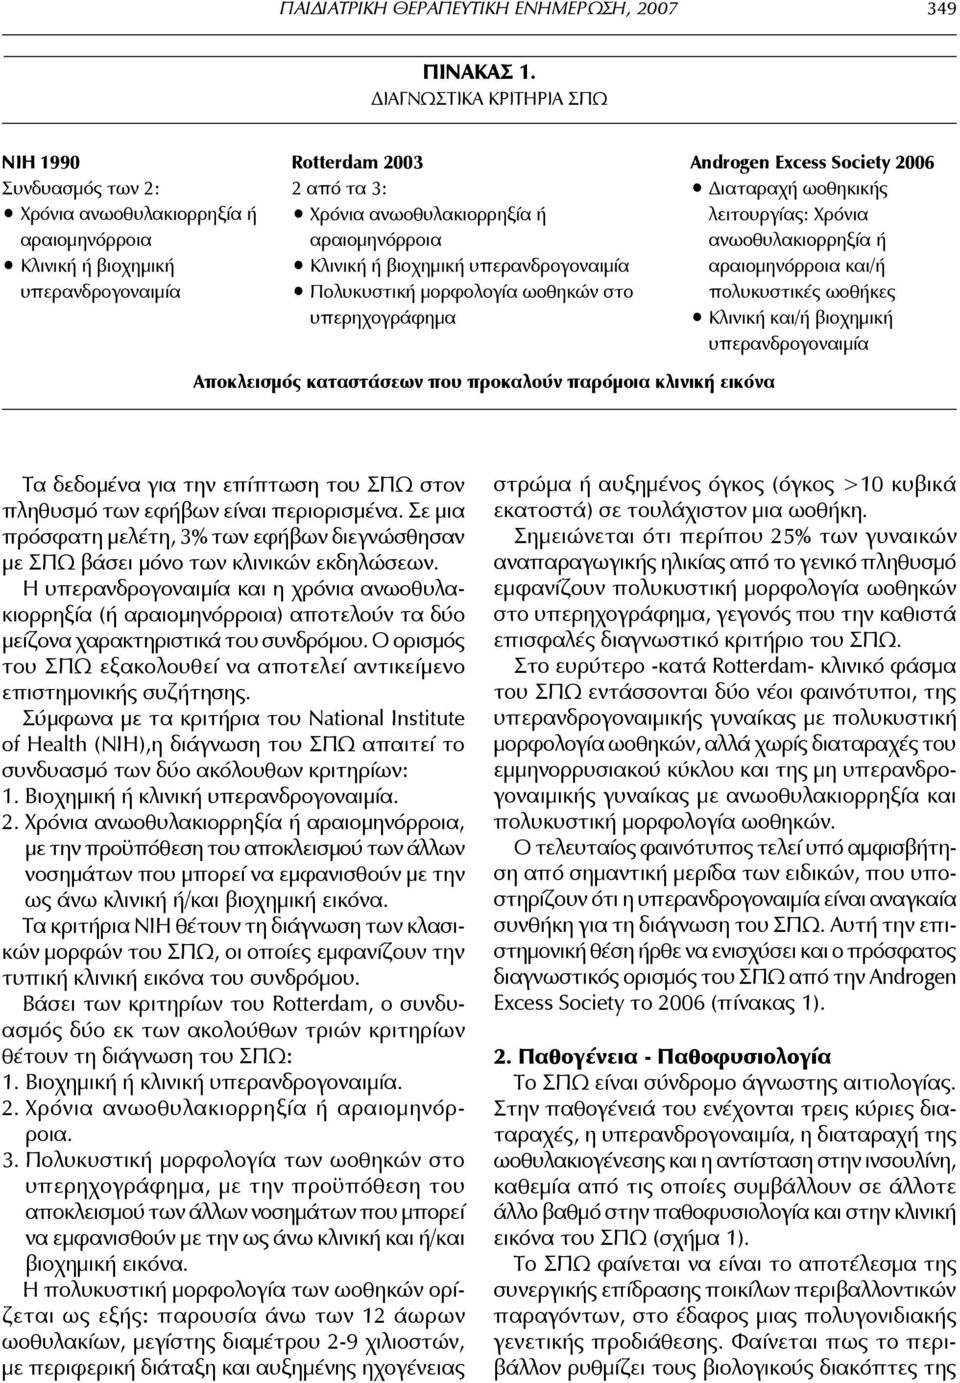 αραιομηνόρροια Κλινική ή βιοχημική υπερανδρογοναιμία Πολυκυστική μορφολογία ωοθηκών στο υπερηχο γράφημα Androgen Excess Society 2006 Διαταραχή ωοθηκικής λειτουργίας: Χρόνια ανωοθυλακιορρηξία ή